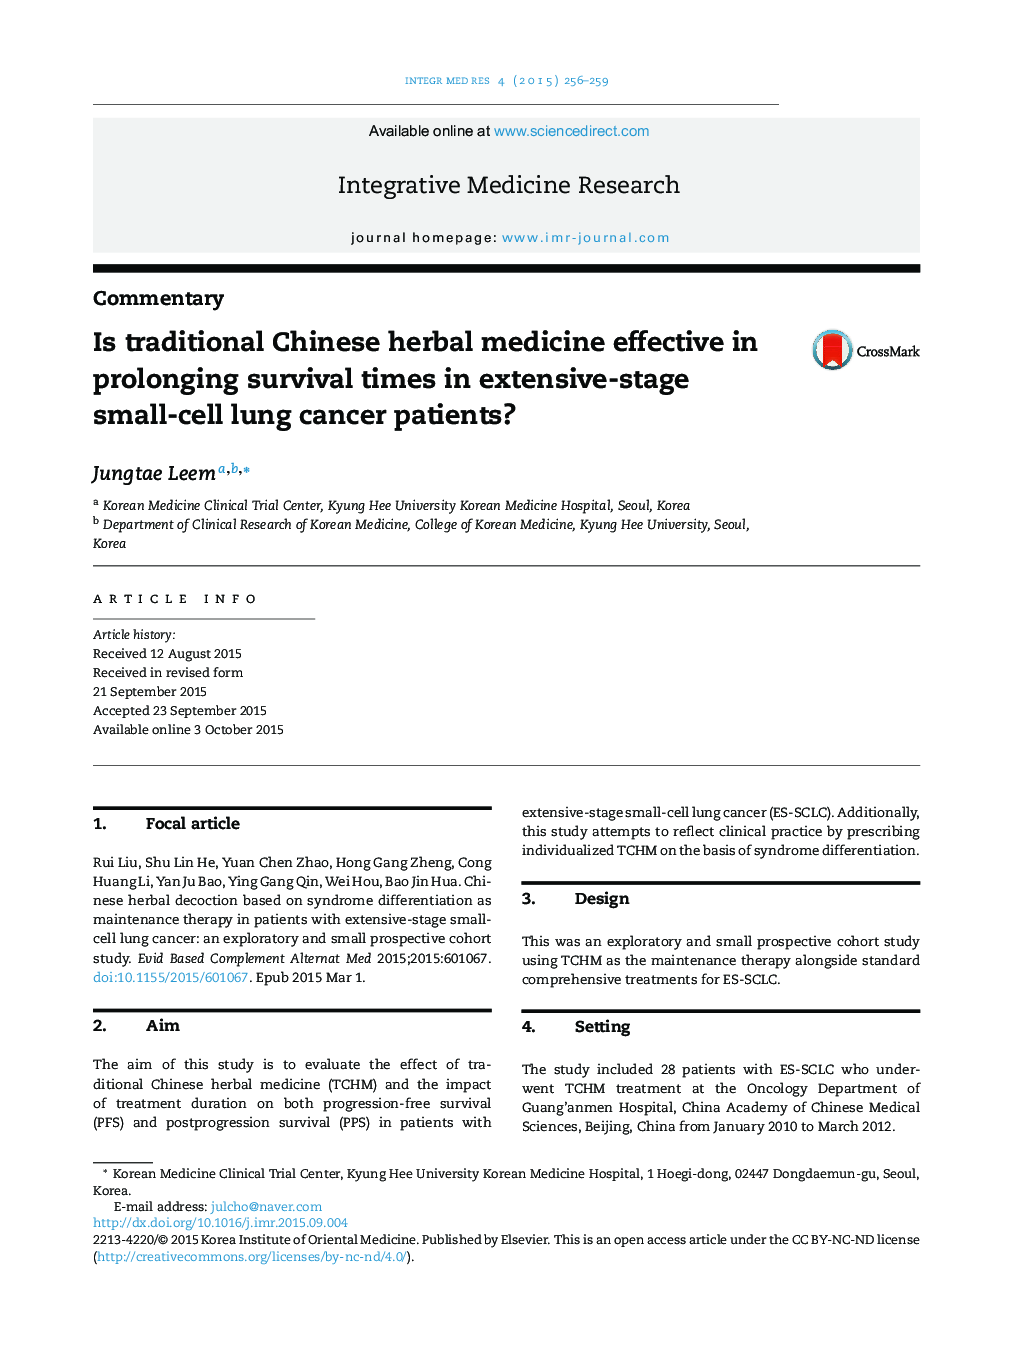 آیا گیاه دارویی سنتی چینی در طول زمان بقا در بیماران مبتلا به سرطان ریه سلول های کوچک موثر است؟ 